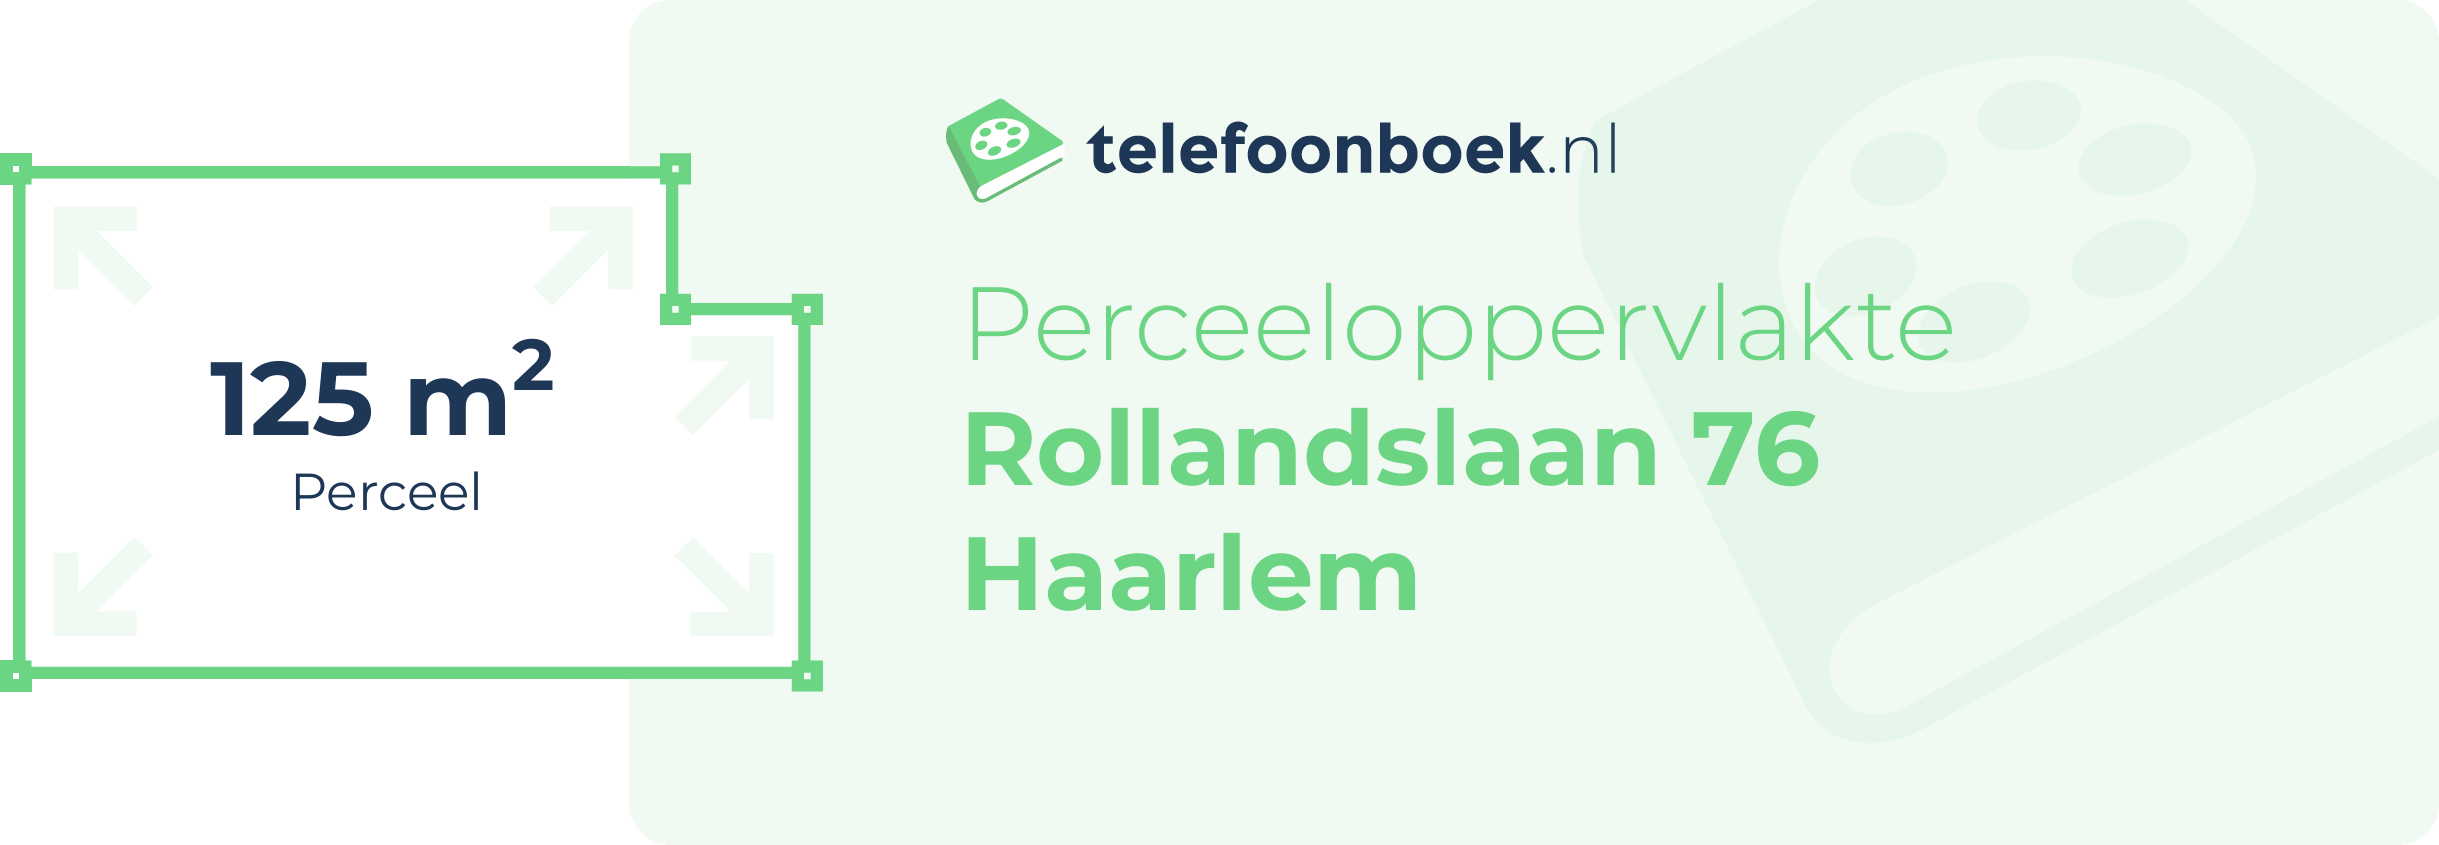 Perceeloppervlakte Rollandslaan 76 Haarlem